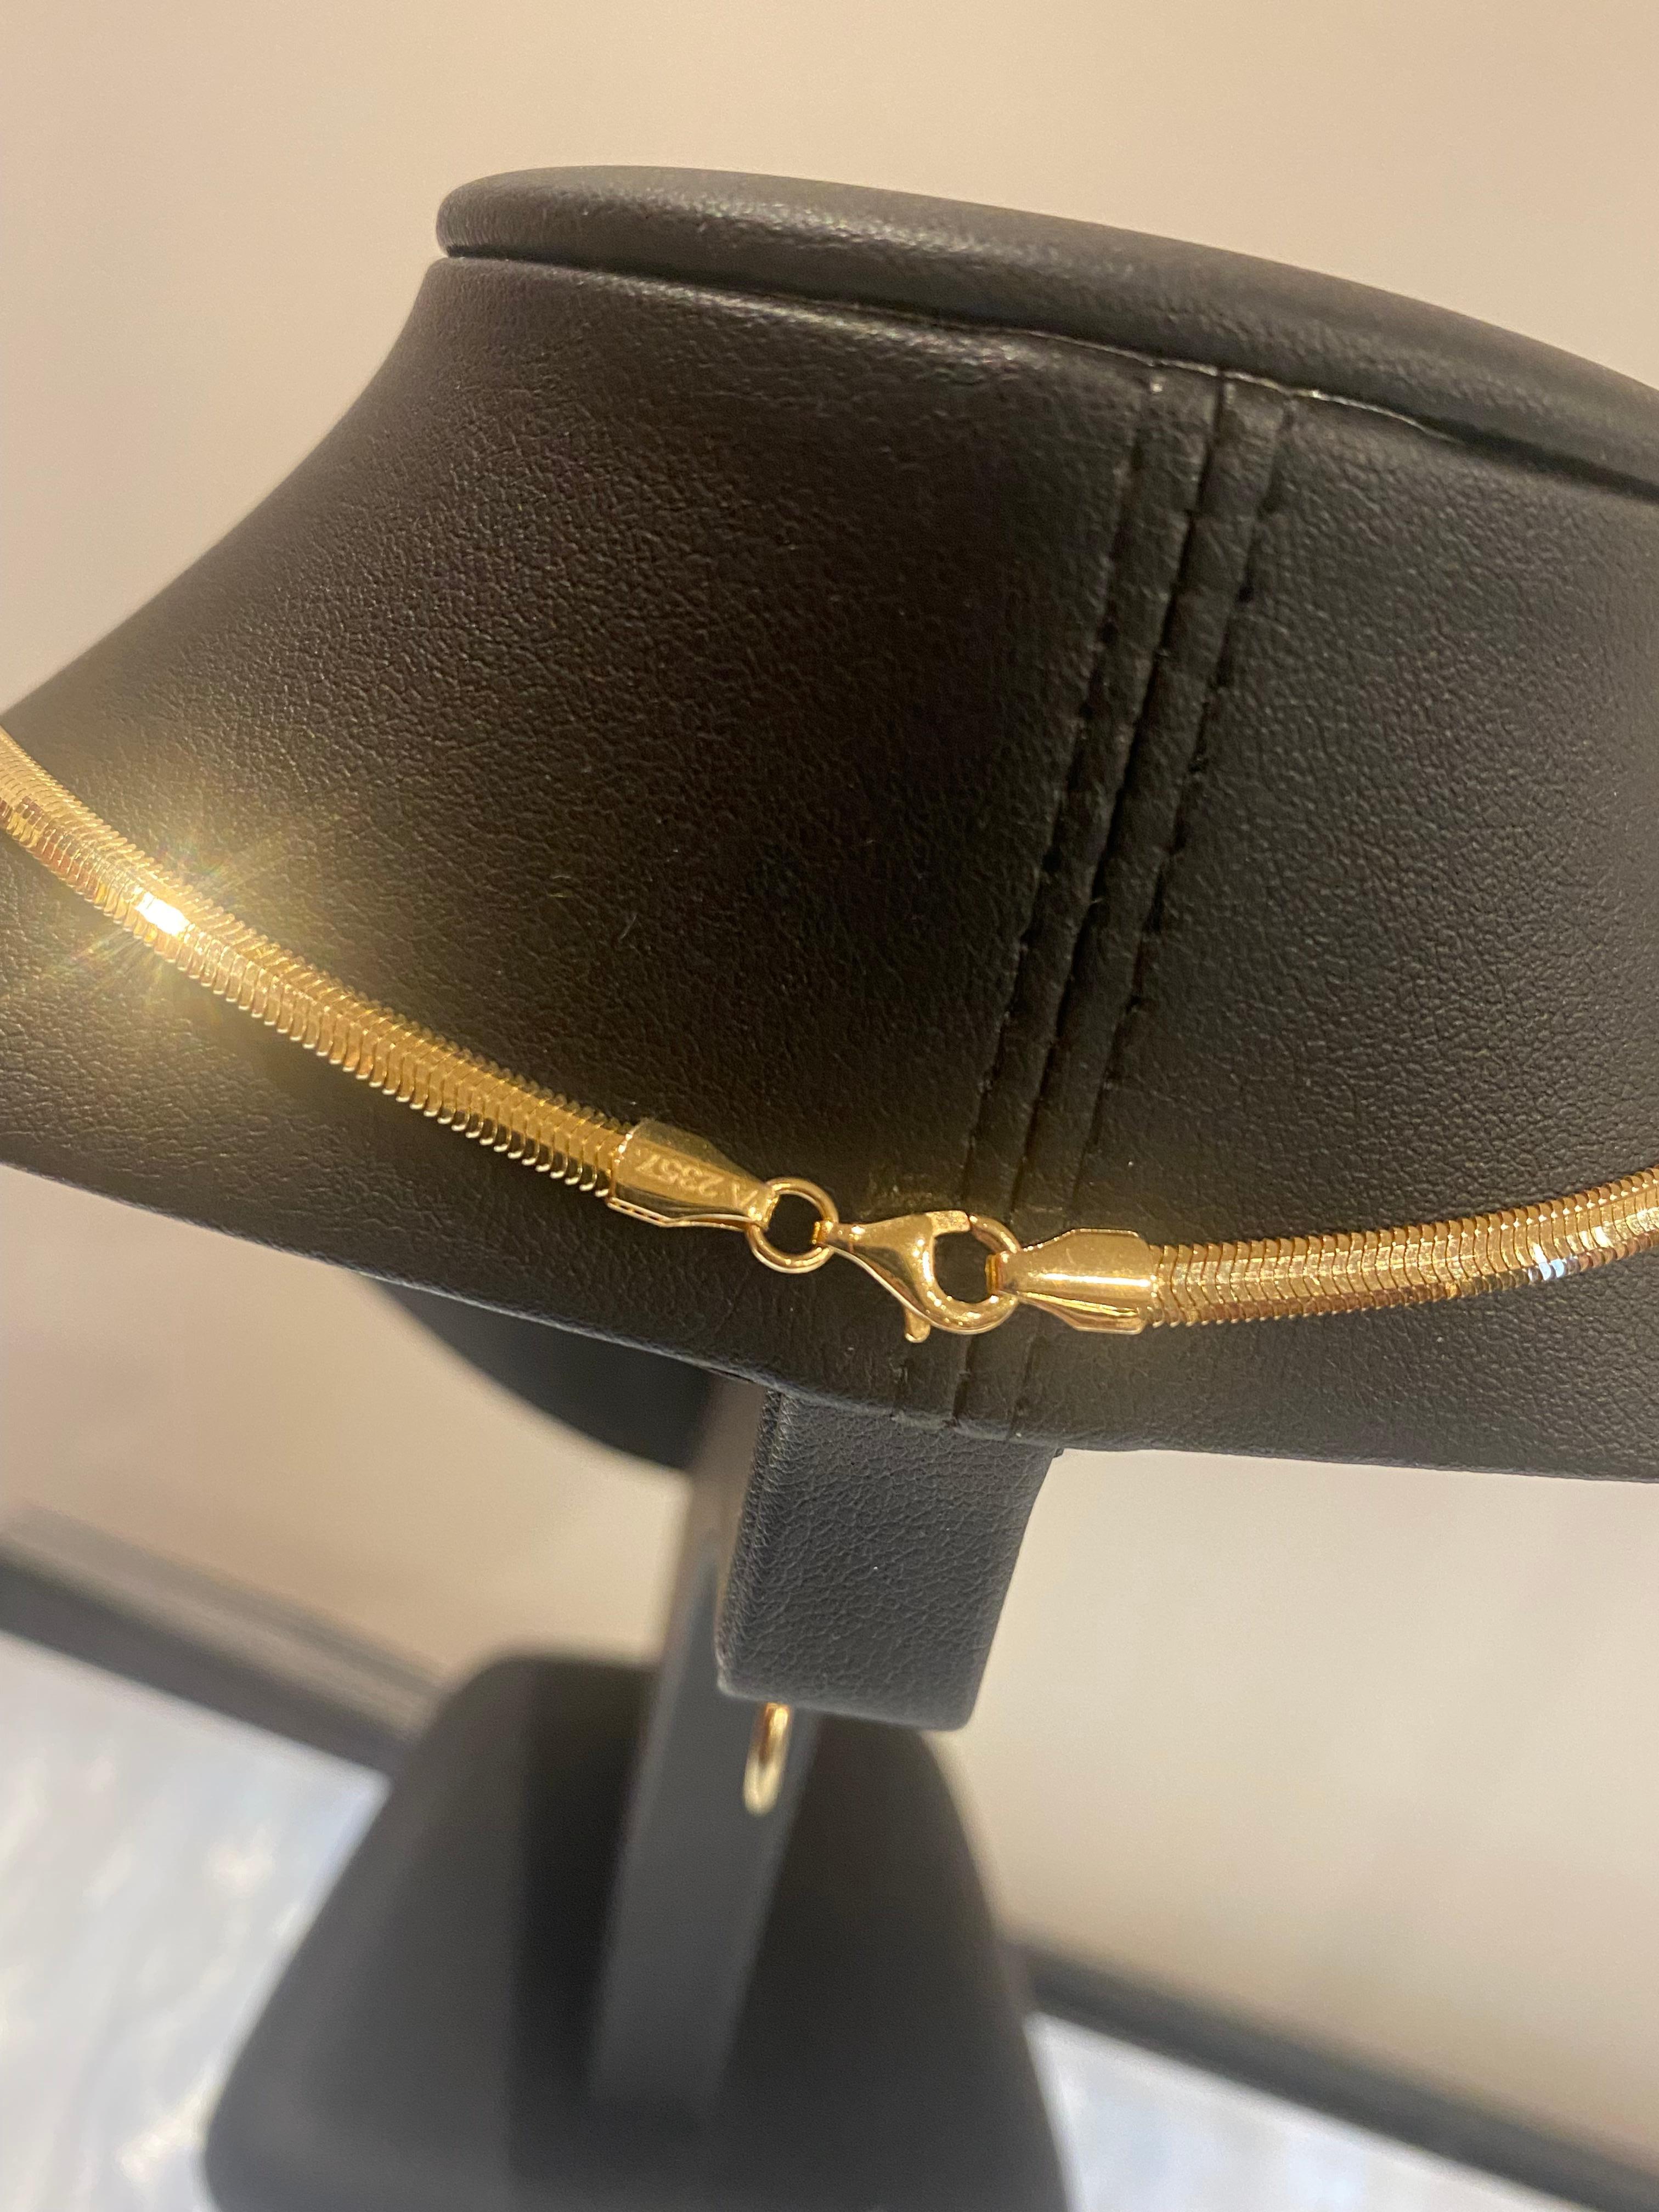 Ce magnifique collier à maillons en or 18K (épine à nourrice et serpent)
ajoute une touche de luxe et de sophistication à votre look

~~

Fabriqué en Italie, ce bijou de qualité date des années 1980&. 
est dotée d'une magnifique chaîne serpentine